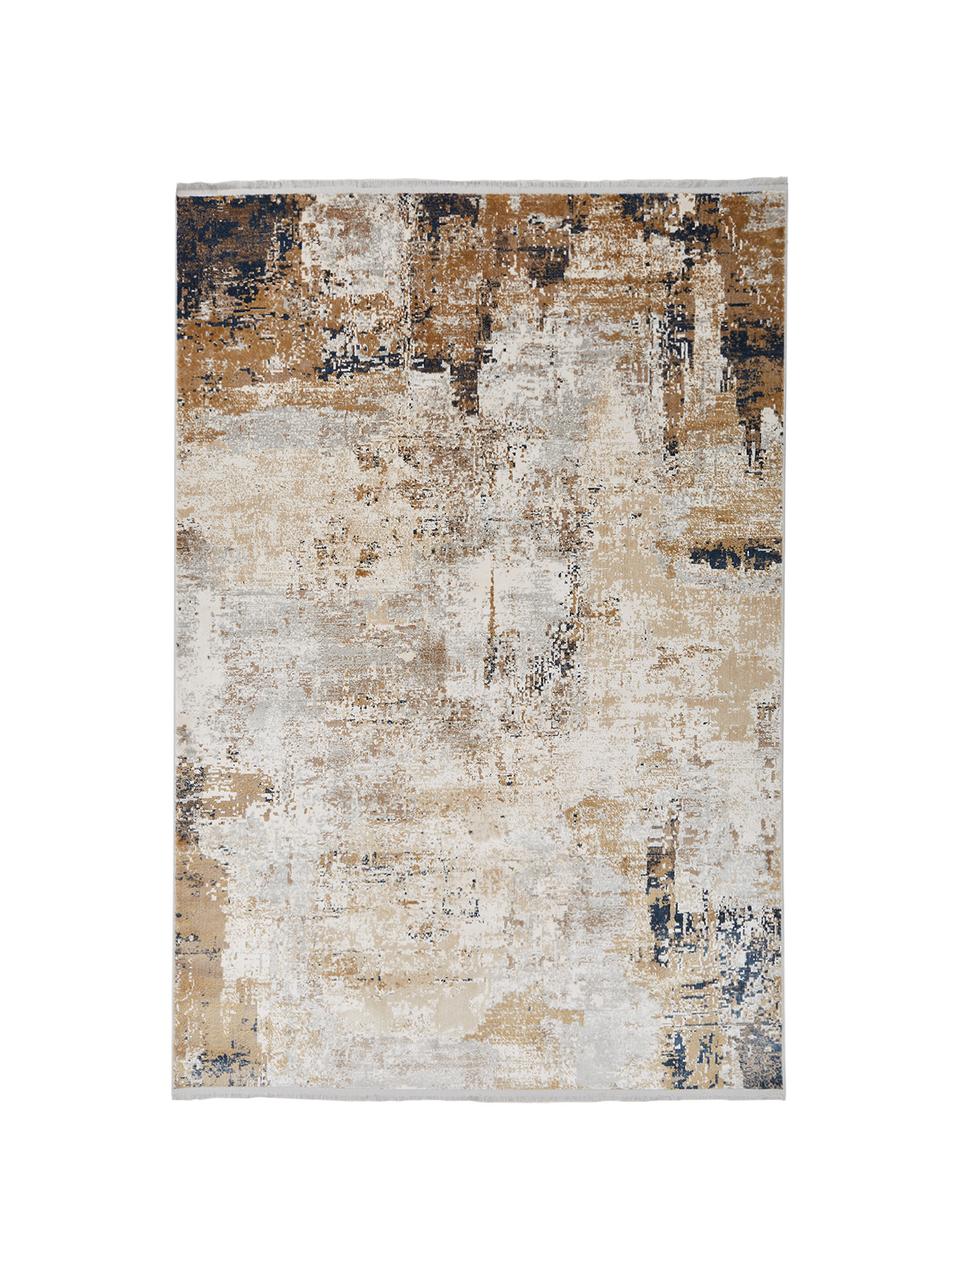 Vloerkleed Verona met abstract patroon, Bovenzijde: 50% viscose, 50% acryl, Onderzijde: polyester, Crèmekleurig, beige, grijs, bruin, donkerblauw, B 160 x L 230 cm (maat M)